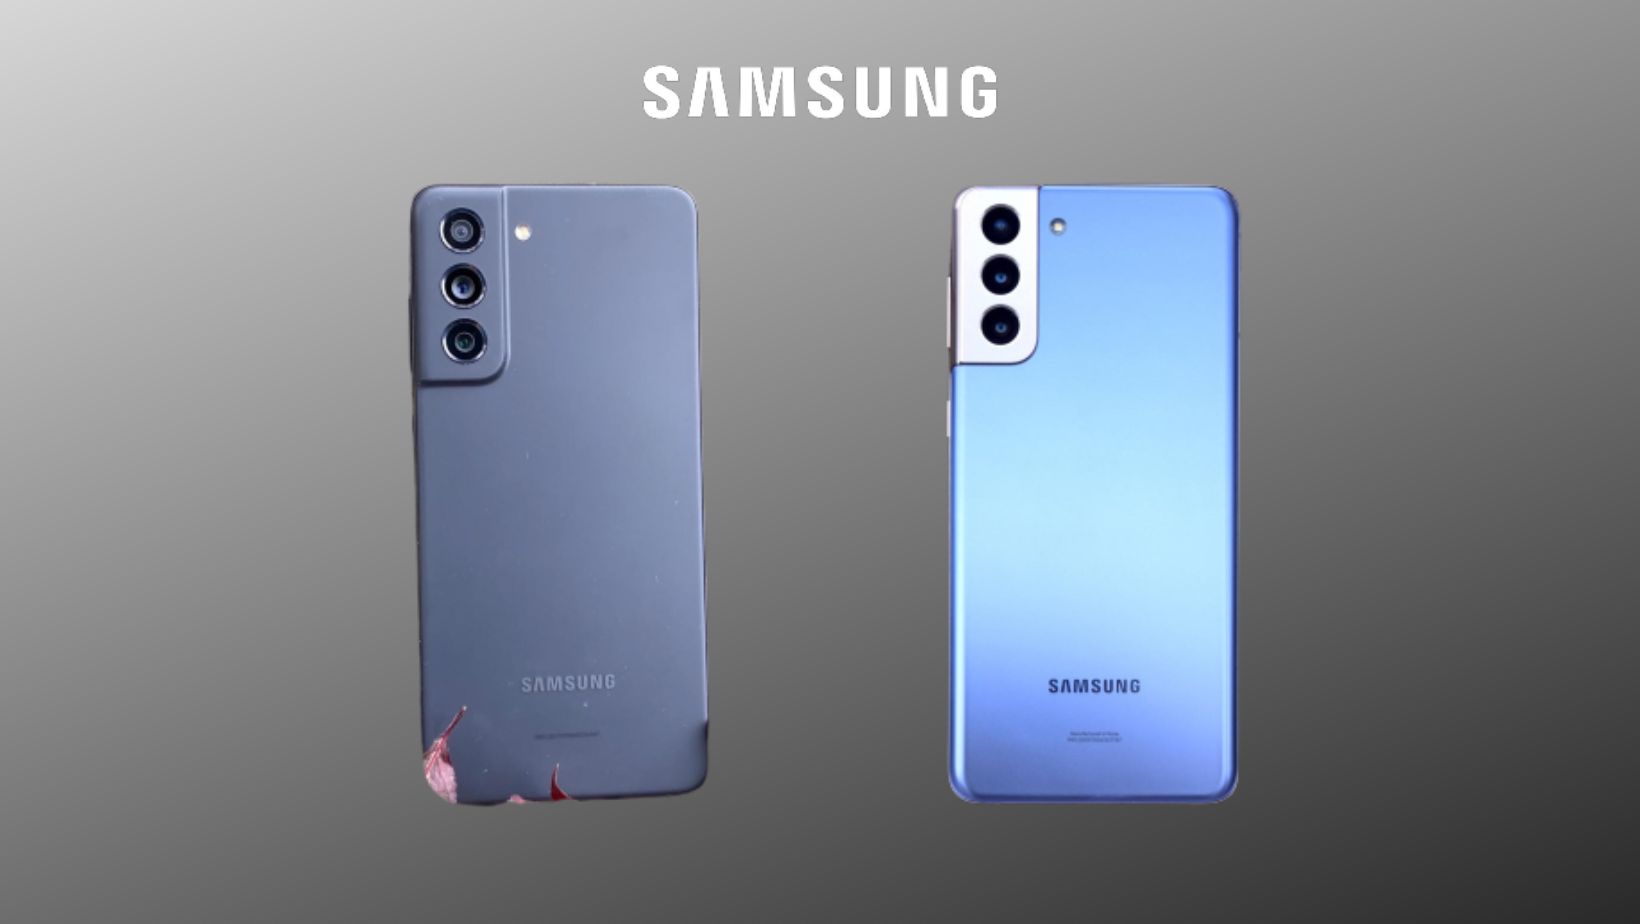 Fundo cinza, destacando os celulares Galaxy S21 e S21 FE nas cores cinza e azul